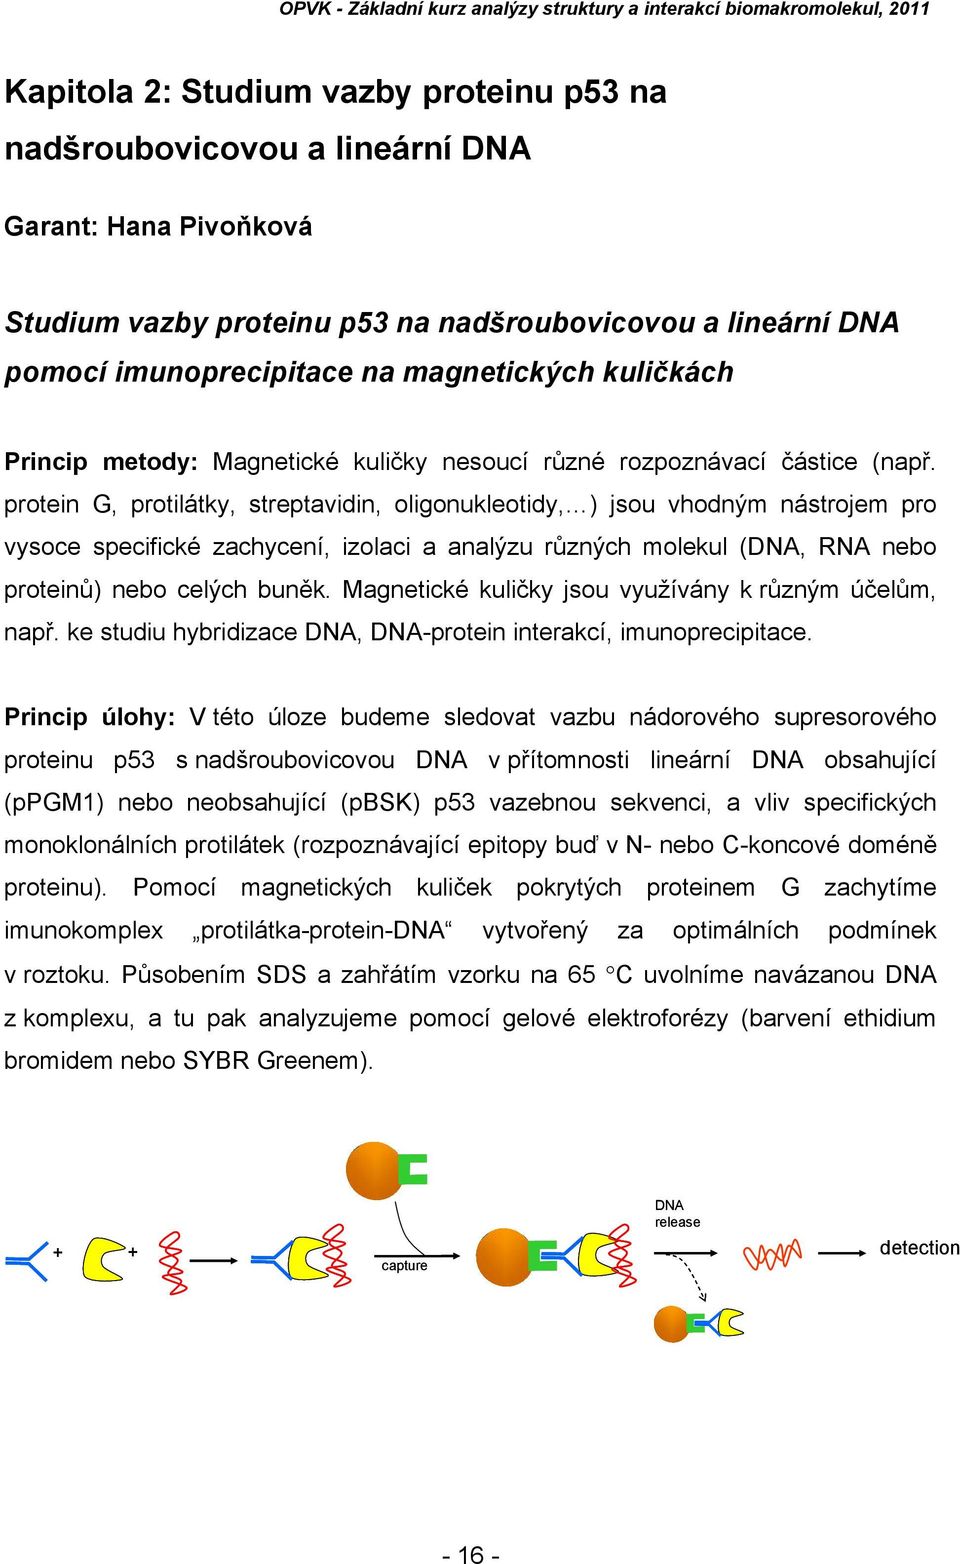 protein G, protilátky, streptavidin, oligonukleotidy, ) jsou vhodným nástrojem pro vysoce specifické zachycení, izolaci a analýzu různých molekul (DNA, RNA nebo proteinů) nebo celých buněk.